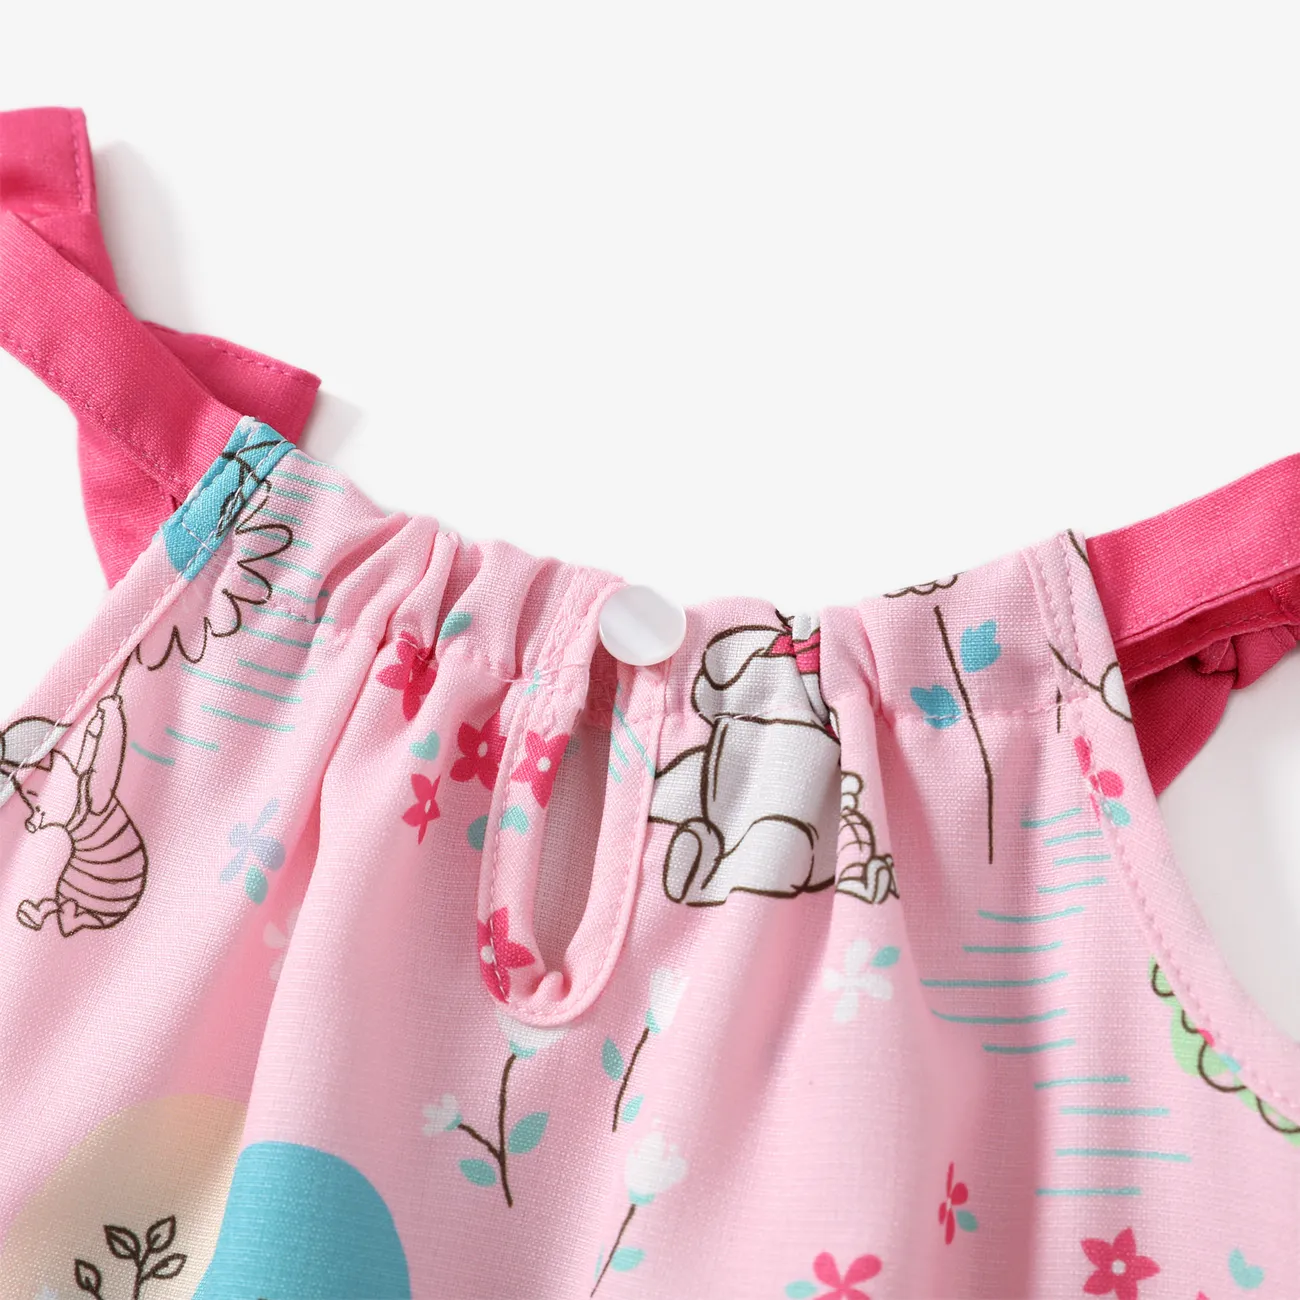 Disney Winnie the Pooh Bebé Con encaje Infantil Camiseta sin mangas Vestido Rosa claro big image 1